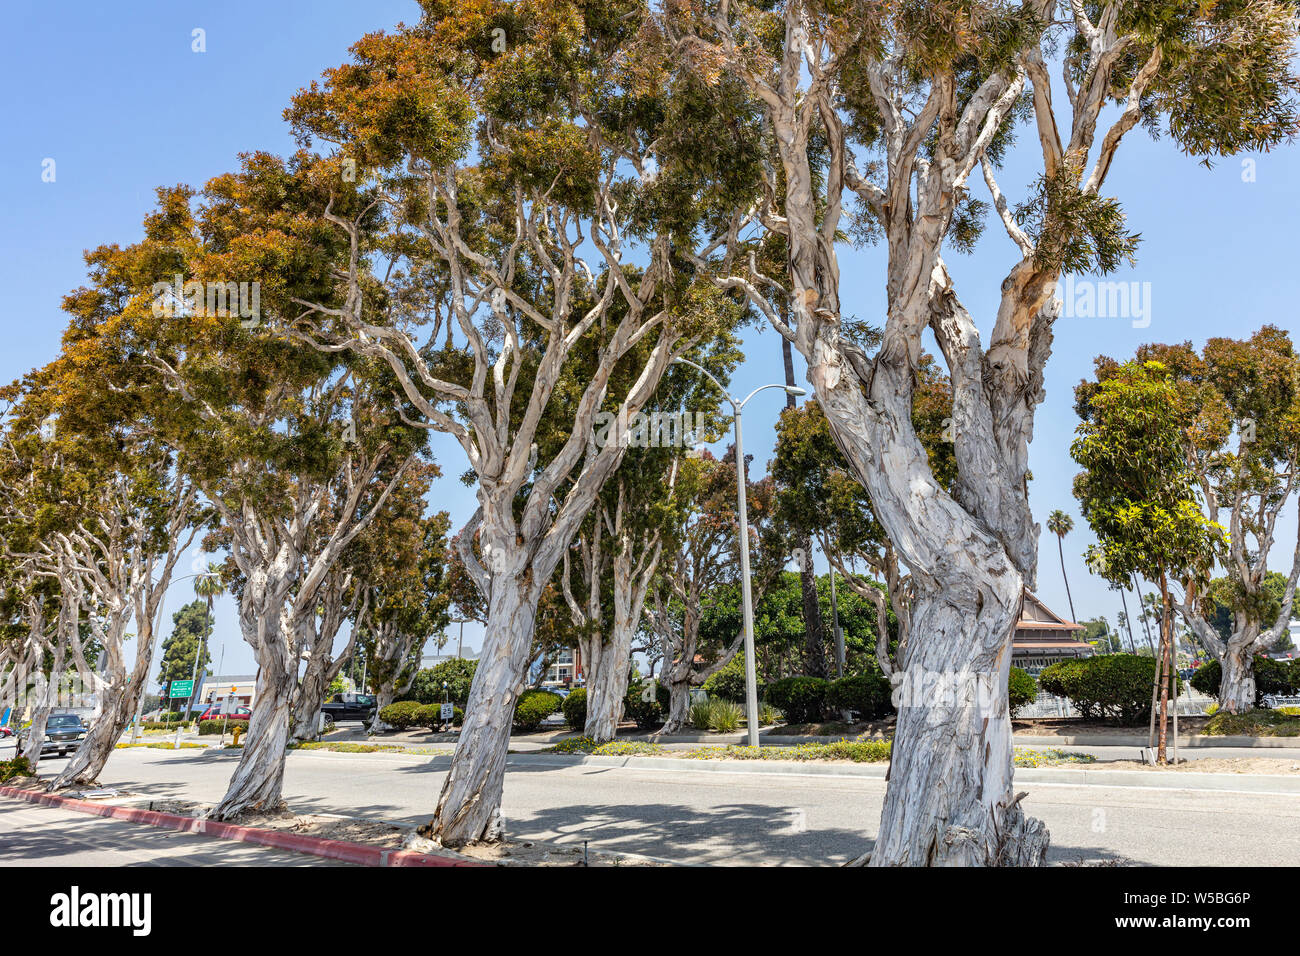 Eucalyptus contre le ciel bleu clair. Journée de printemps ensoleillée. LA, California, USA Banque D'Images